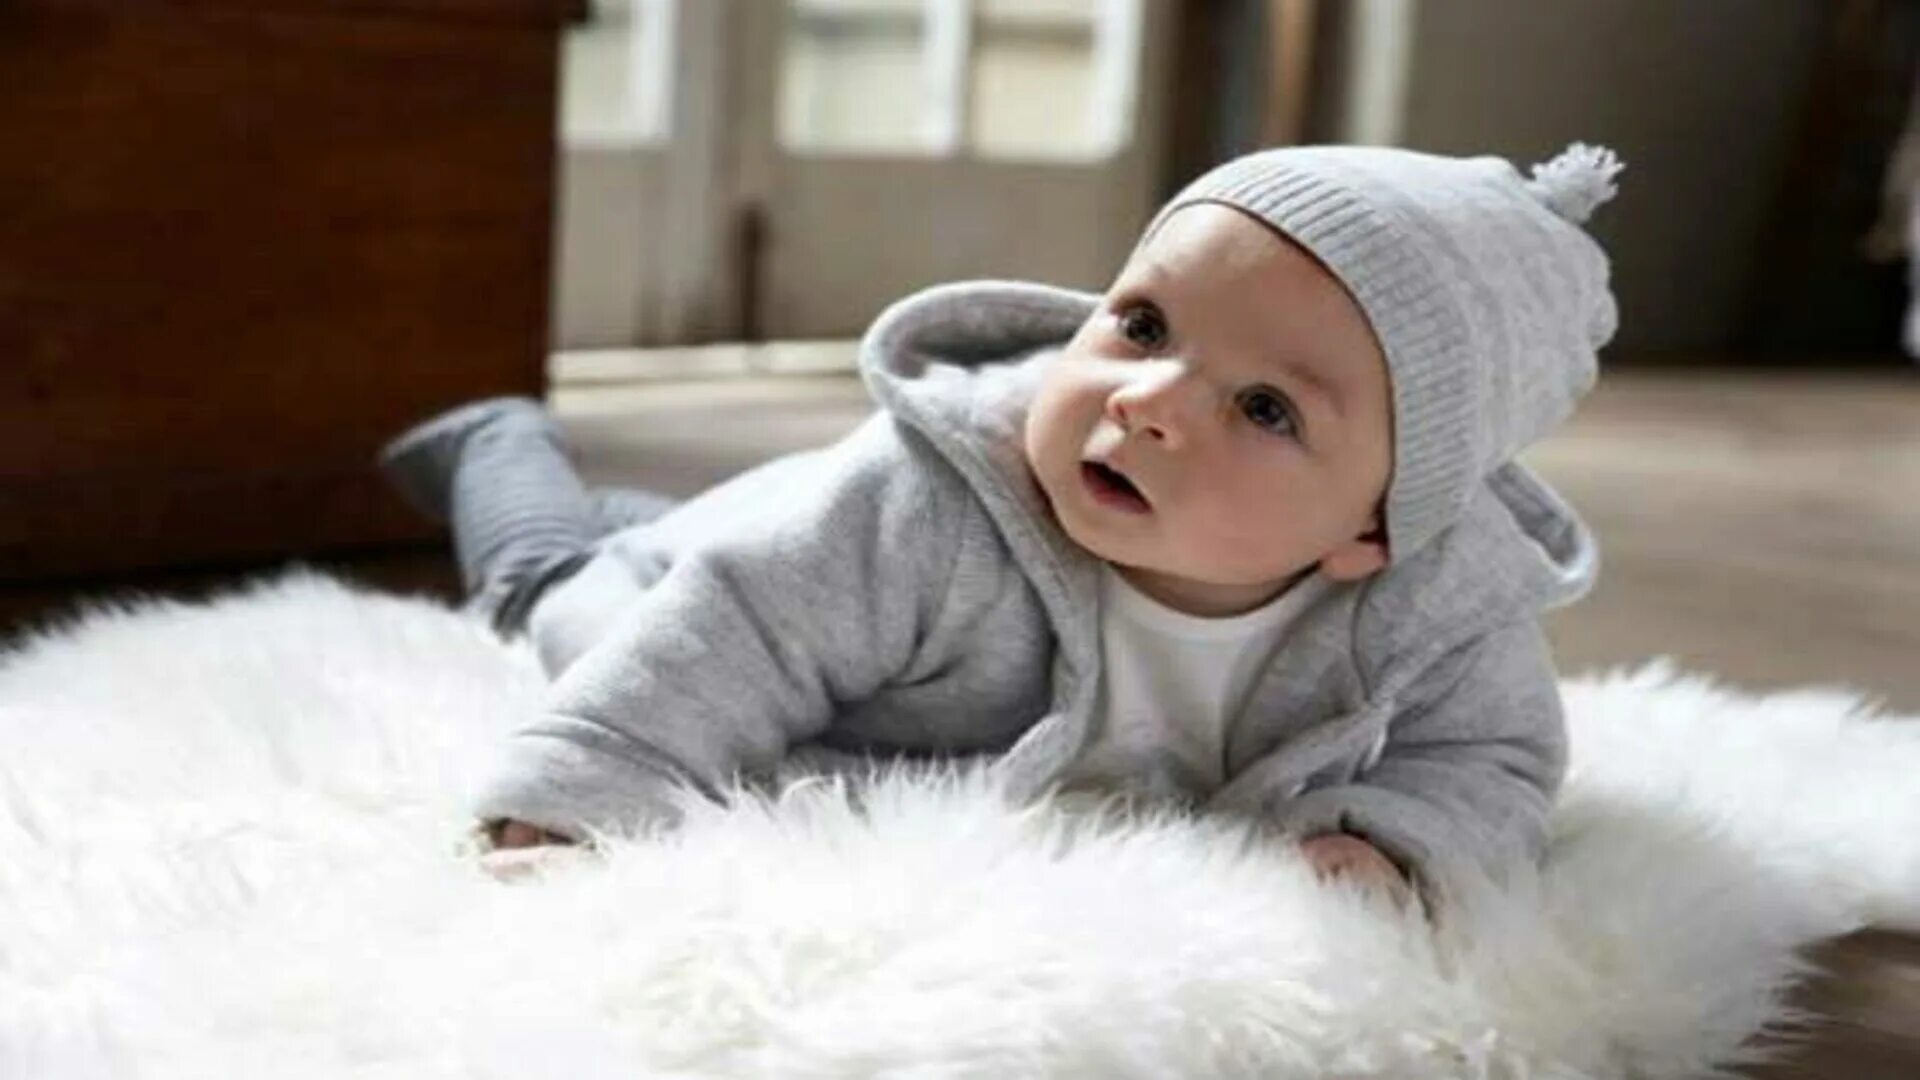 Дети одевались потеплее. Ребенок тепло одет. Новорожденный тепло одет. Новорождённый ребенок в зимней одежде. Детки 7 месяцев зима.